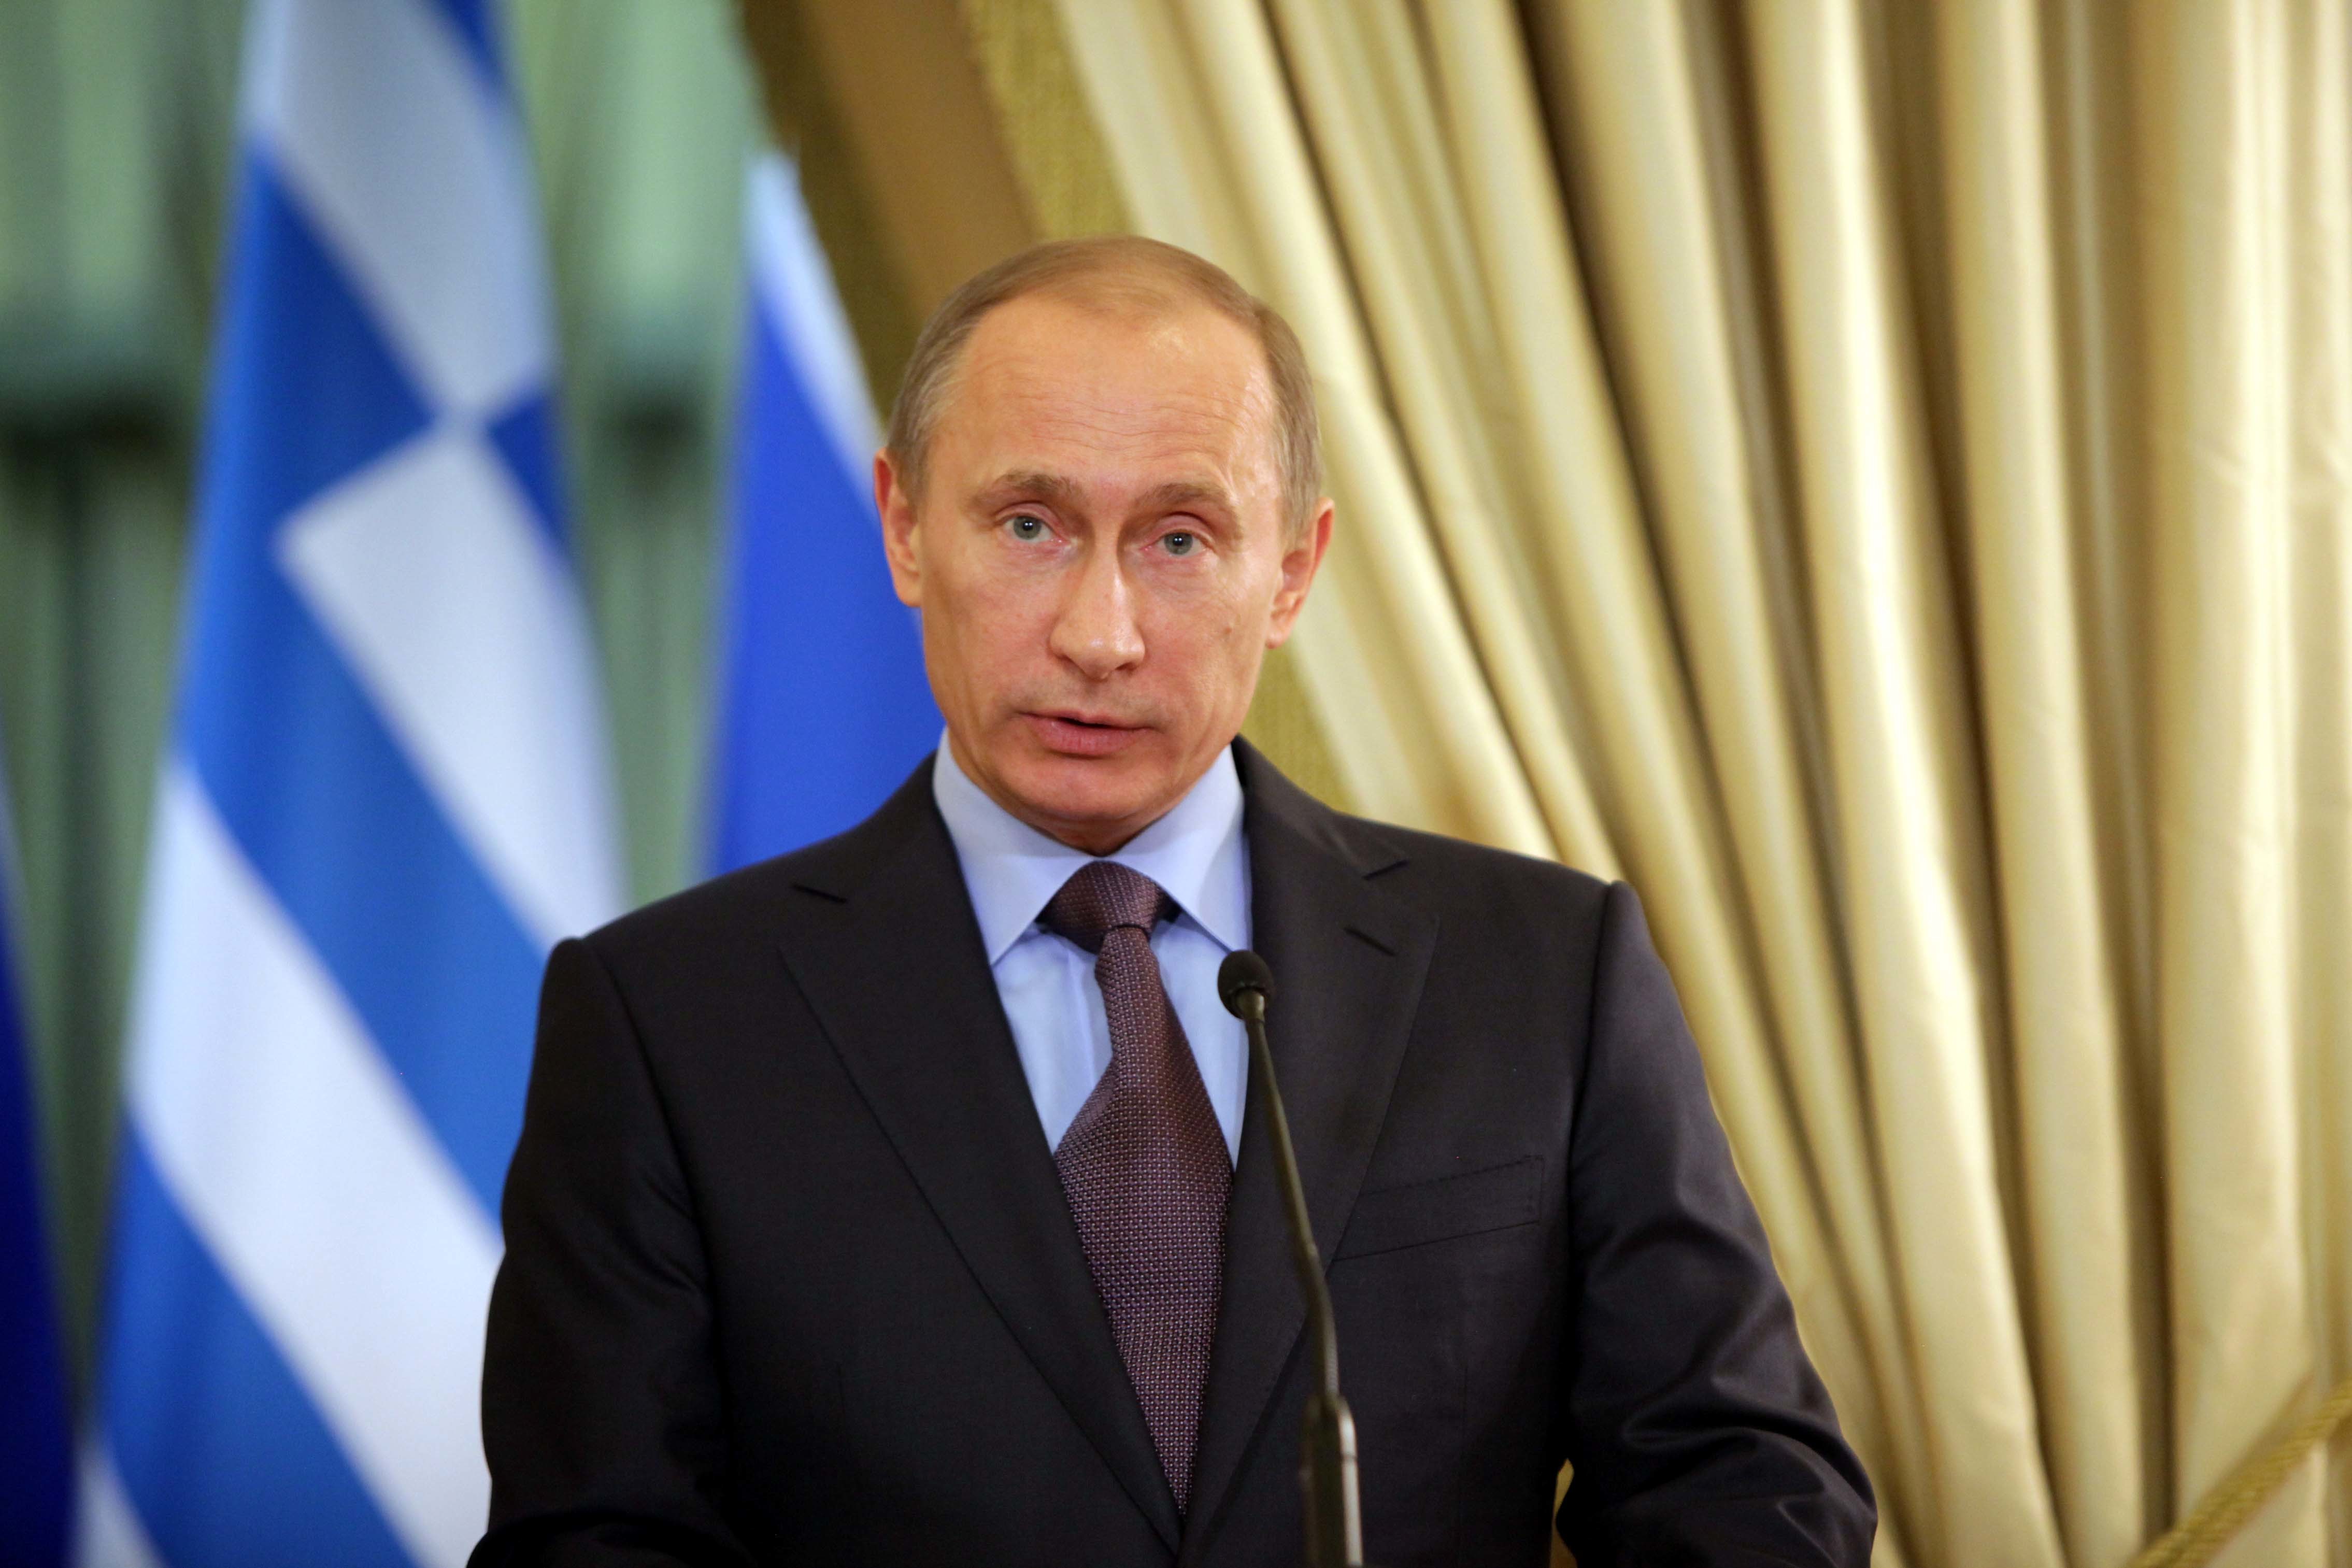 Προειδοποιεί ο Πούτιν τη Δύση για τον αποκλεισμό από Visa και MasterCard